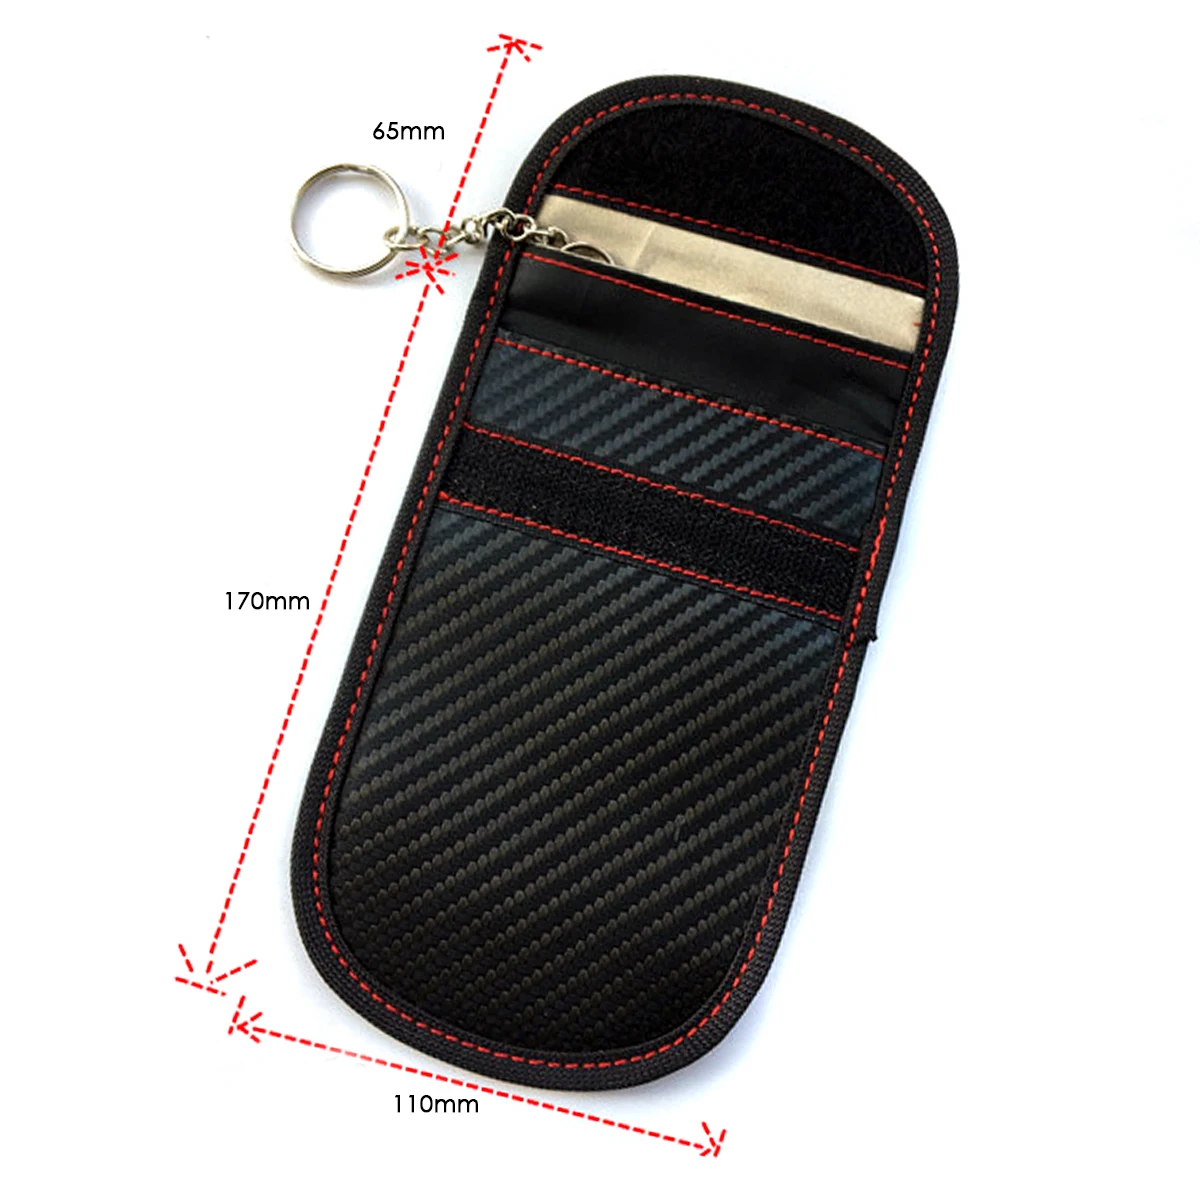 1 шт./2 шт. портативный сигнальный блокатор автомобильный чехол для ключей Faraday клетка без ключа брелок сумка RFID экранирующая сумка с кольцом